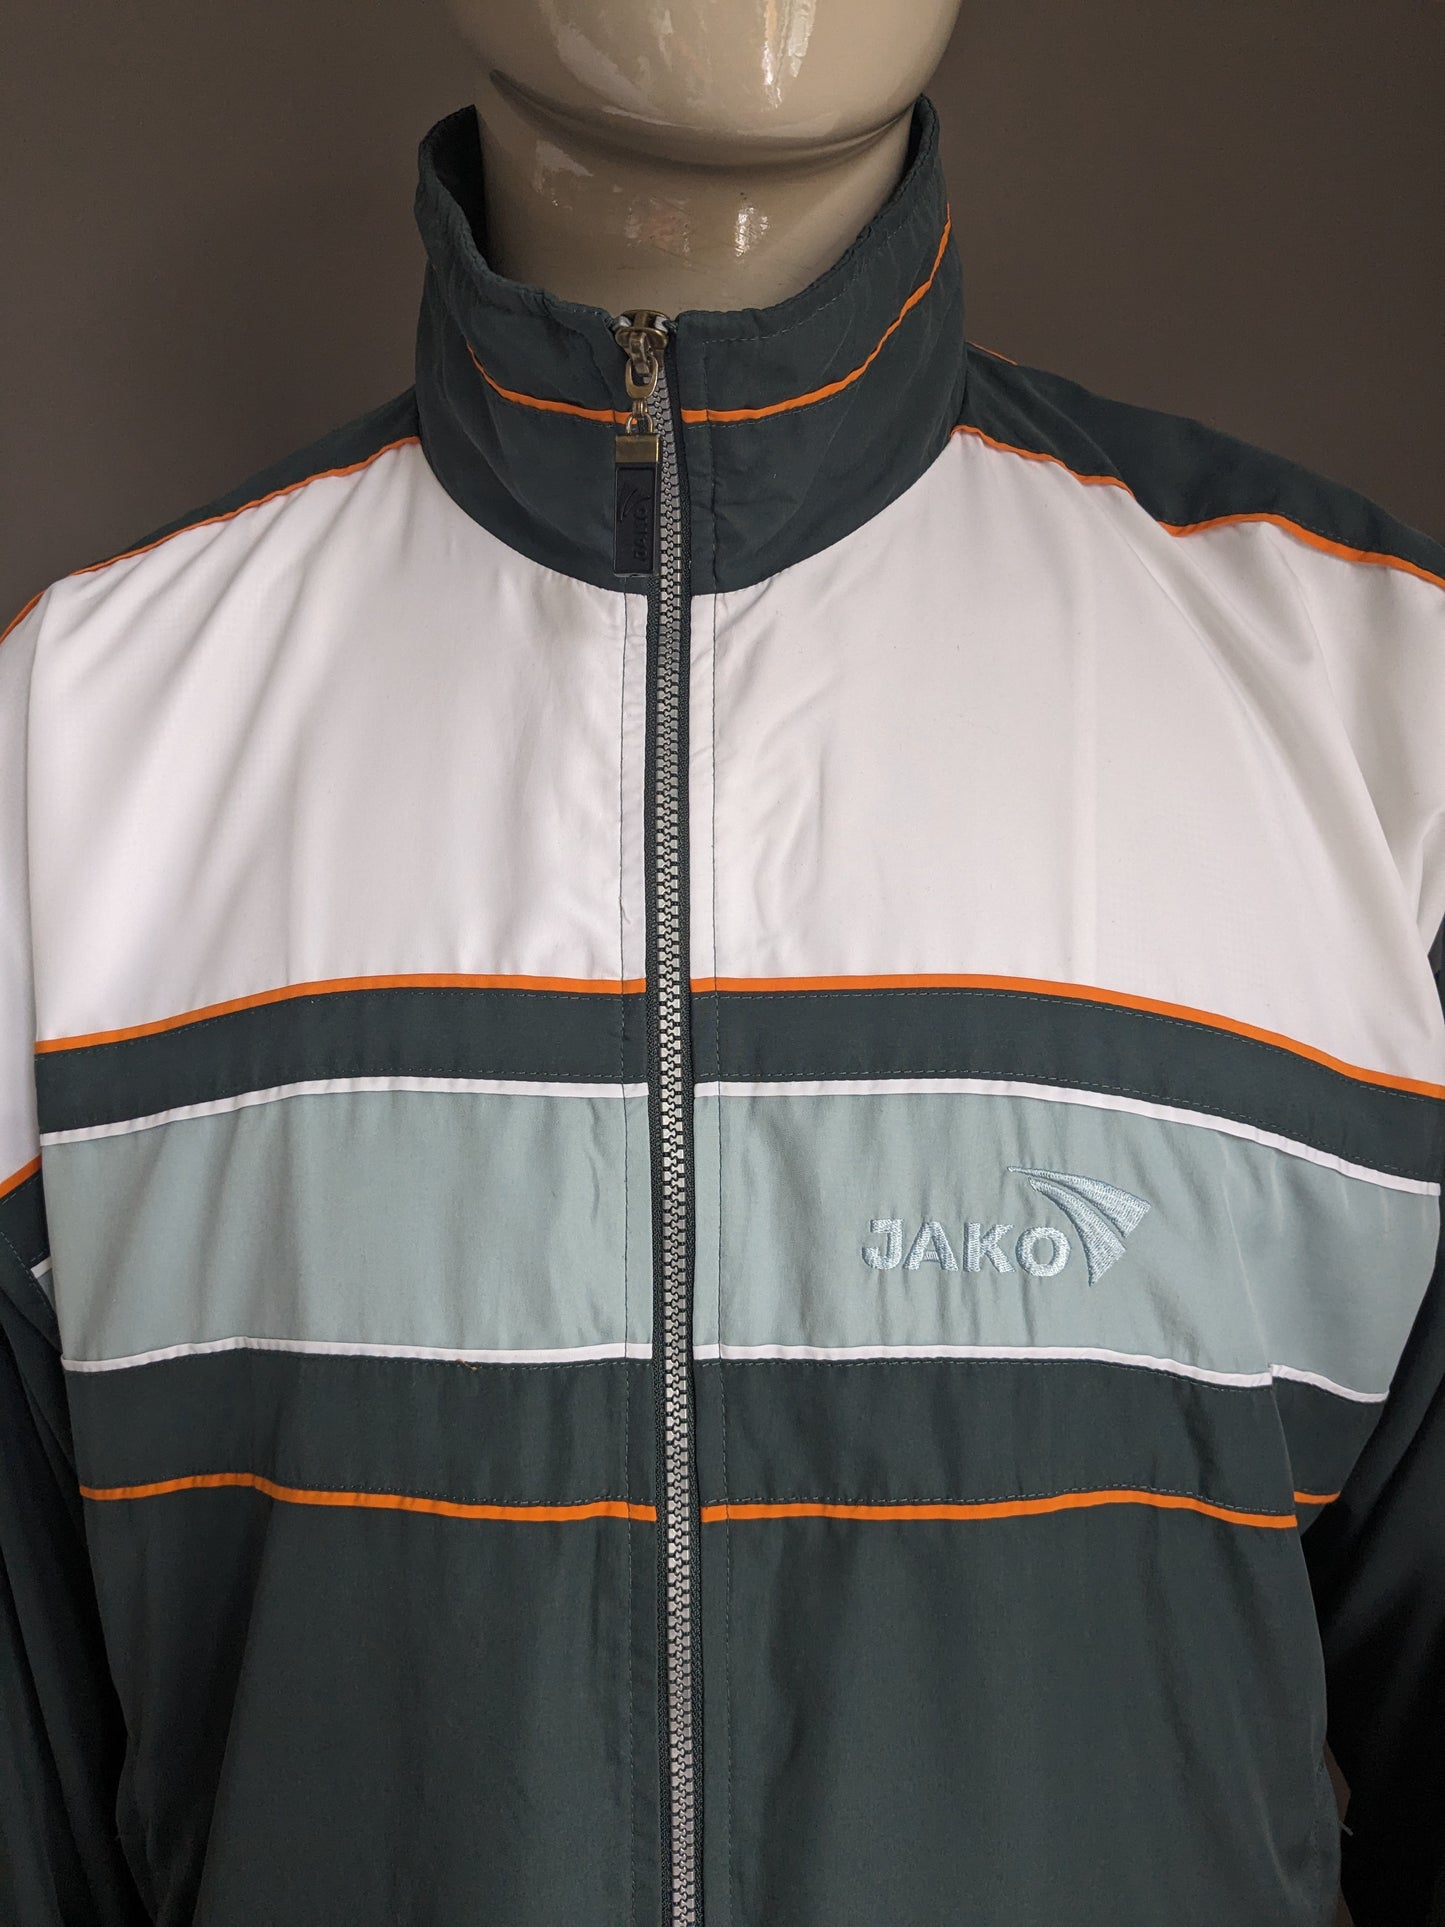 Jako Sport Jako Sport des années 80-90. Couleur blanc orange vert. Taille 2xl / xxl.